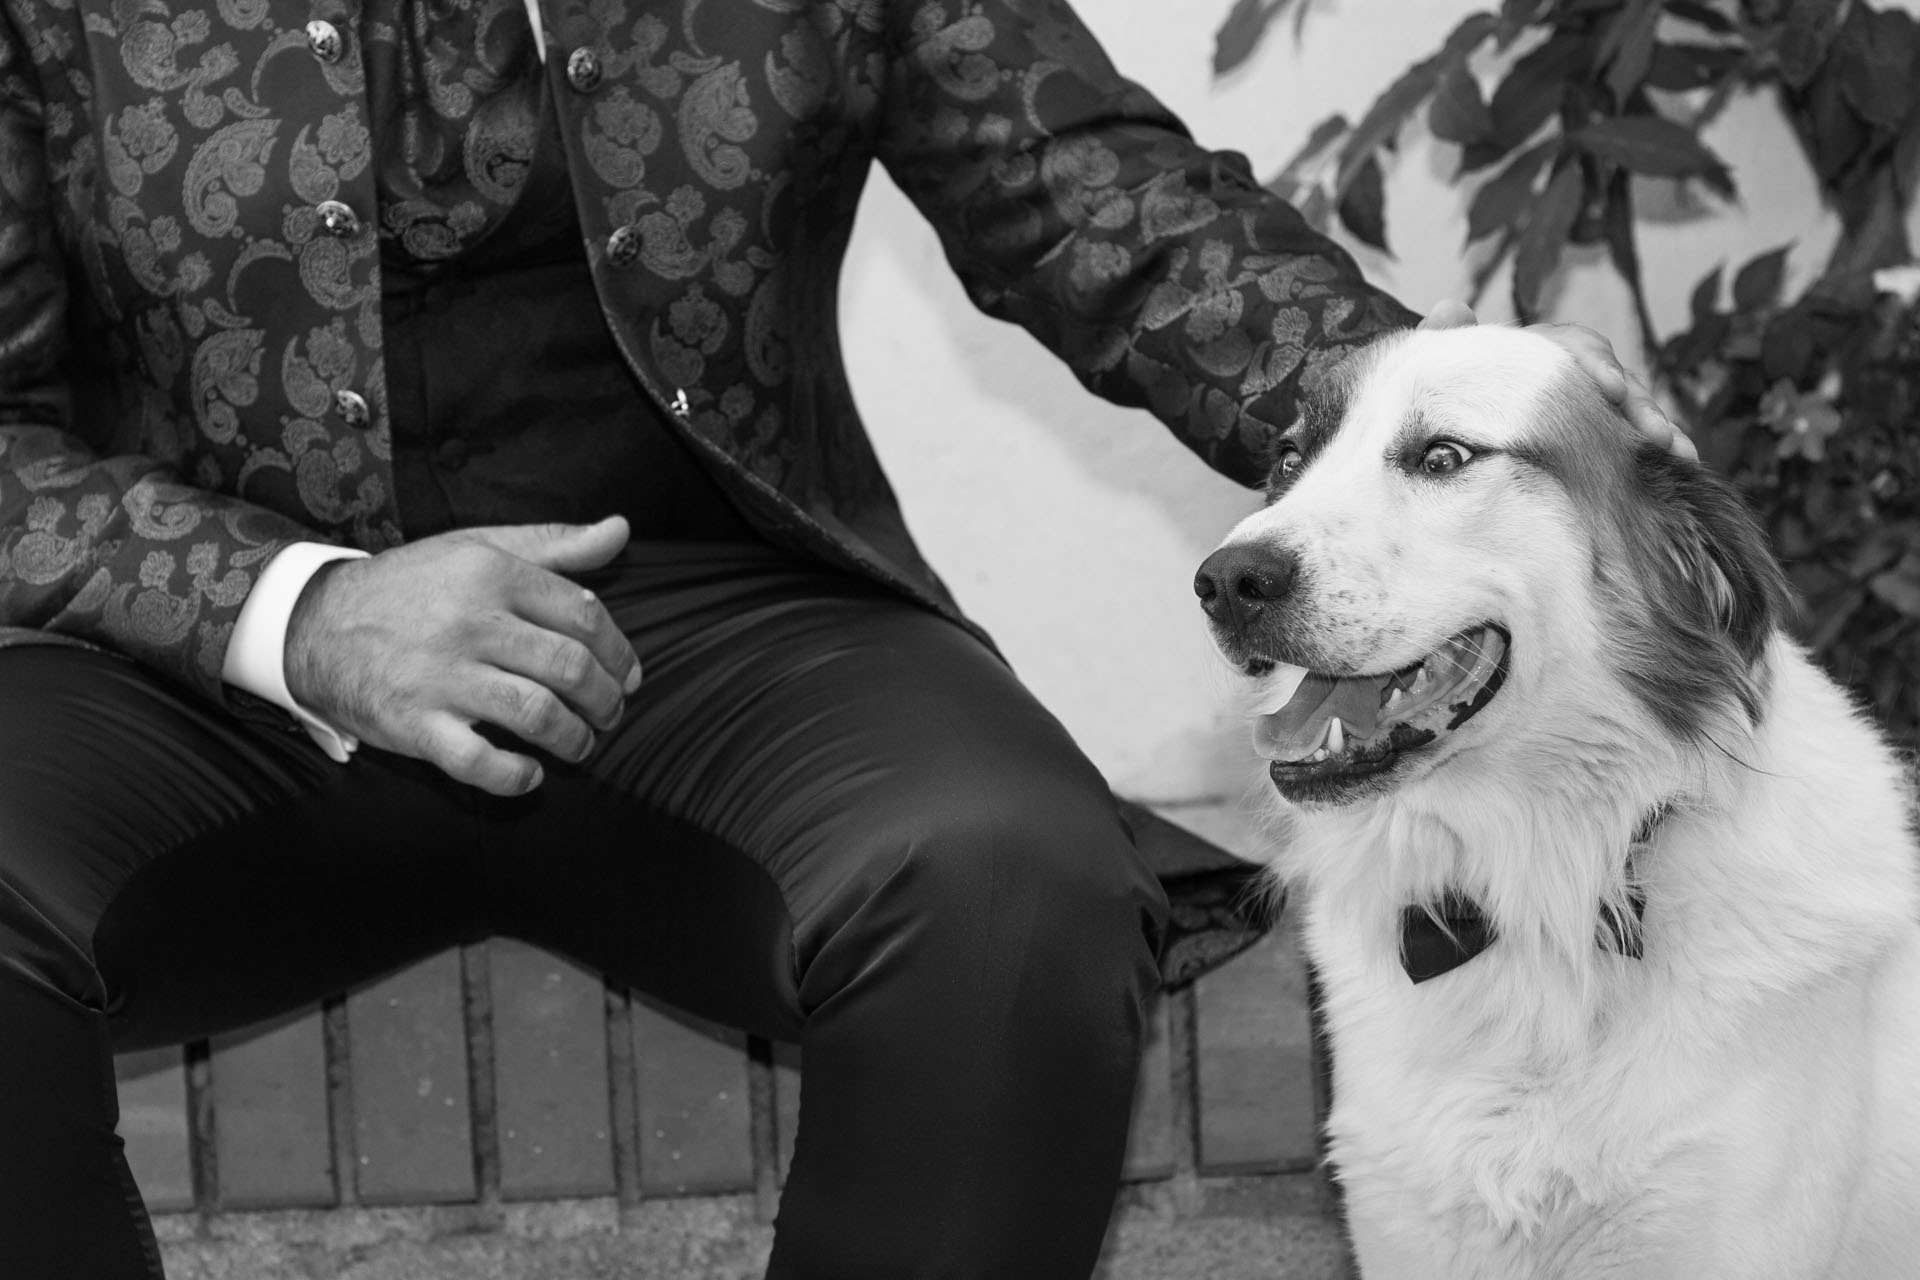 Ritratto fotografico Matrimonio Messina. Sposo con cane.